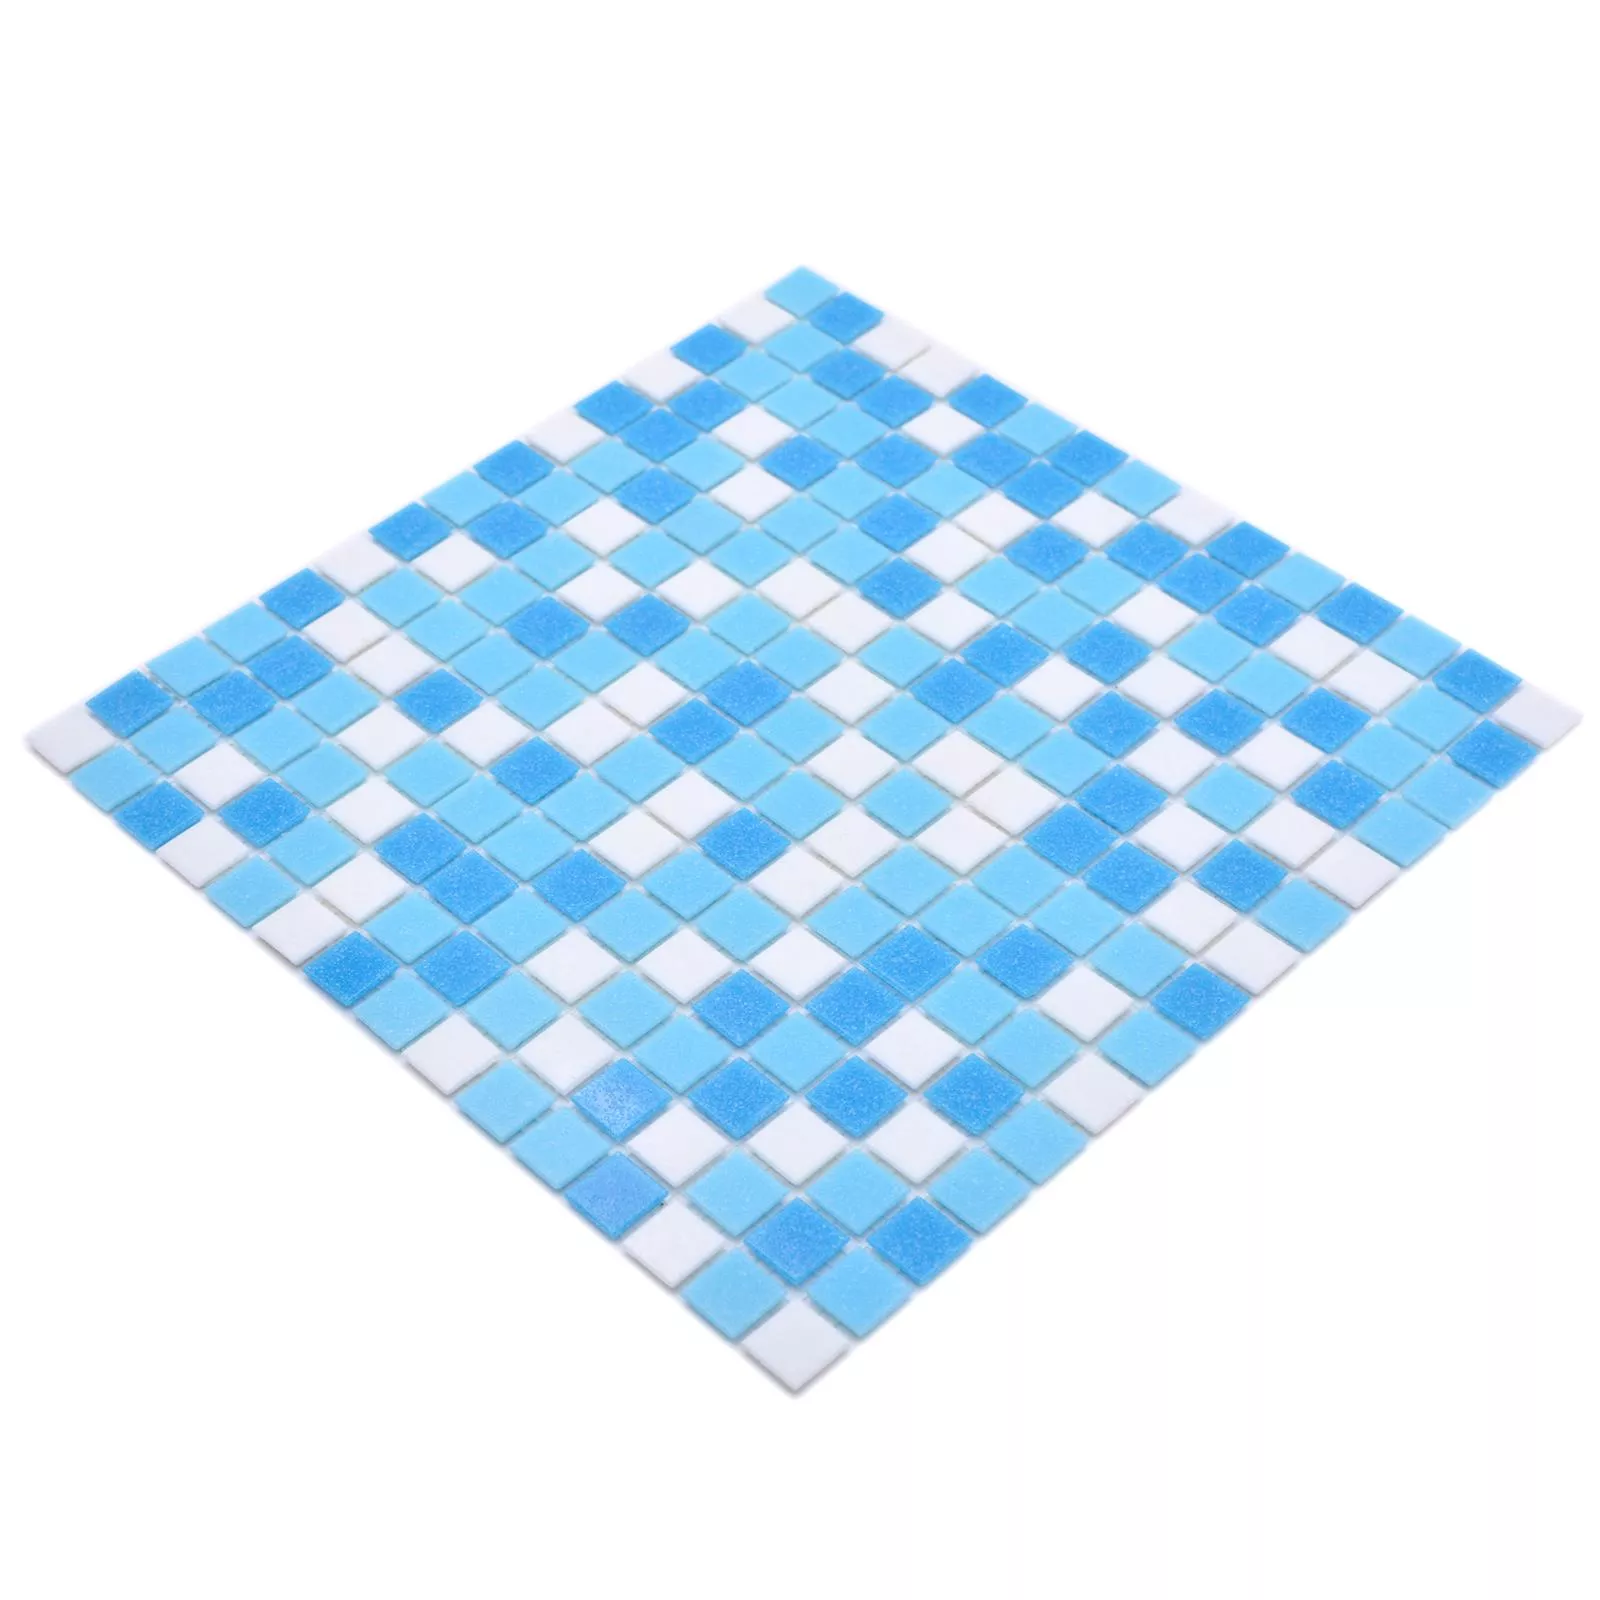 Schwimmbad Pool Mosaik North Sea Weiß Blau Mix